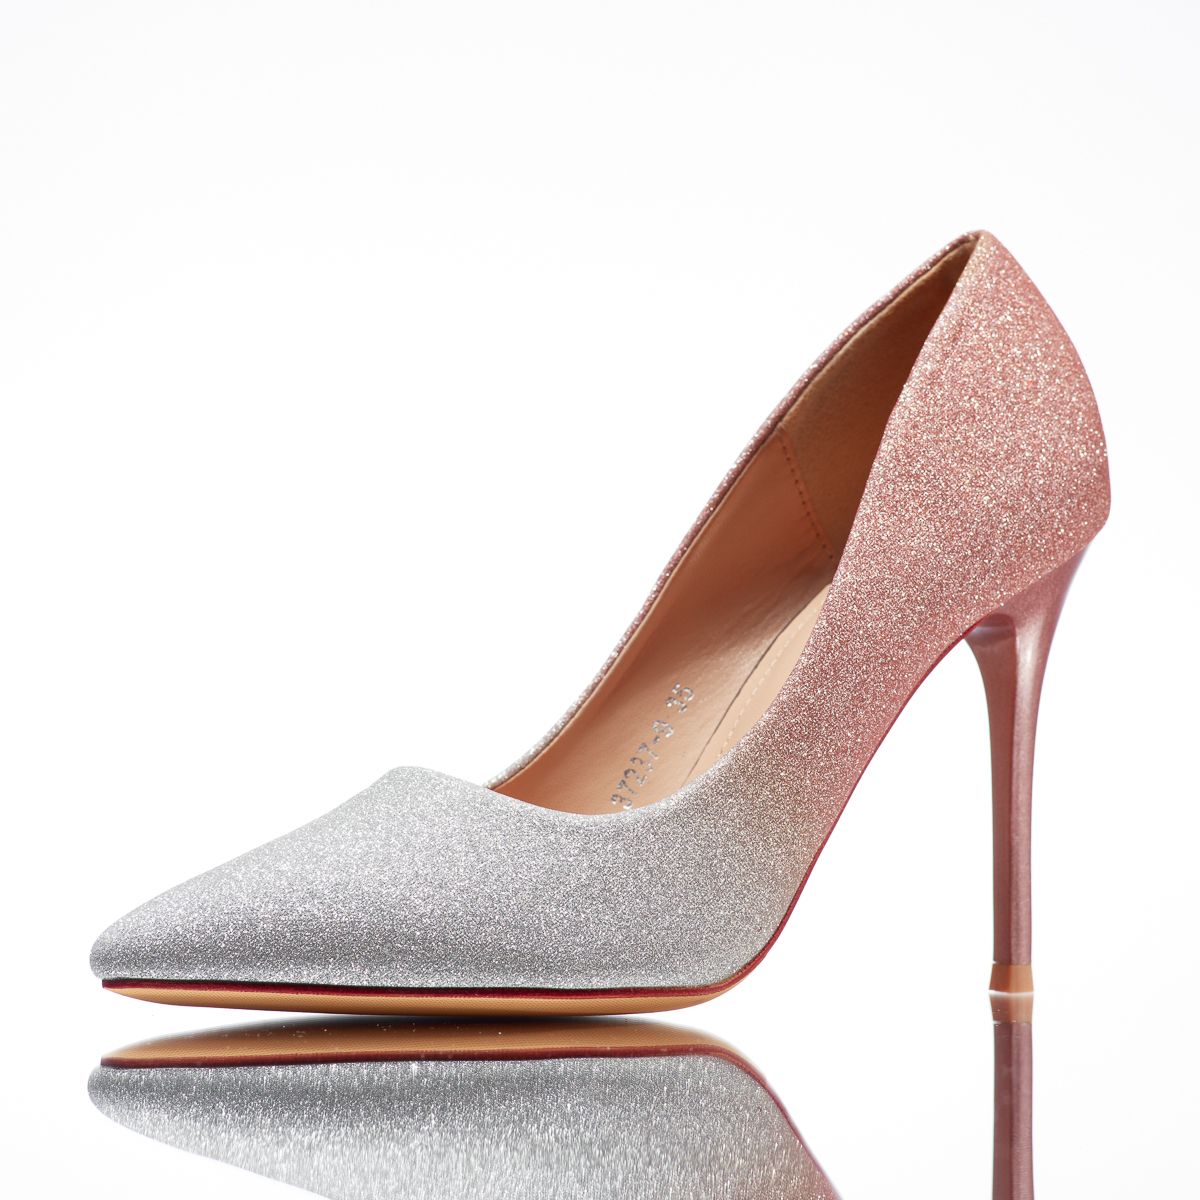 Pantofi Dama cu Toc Ozzy Roz/Aurii #14119